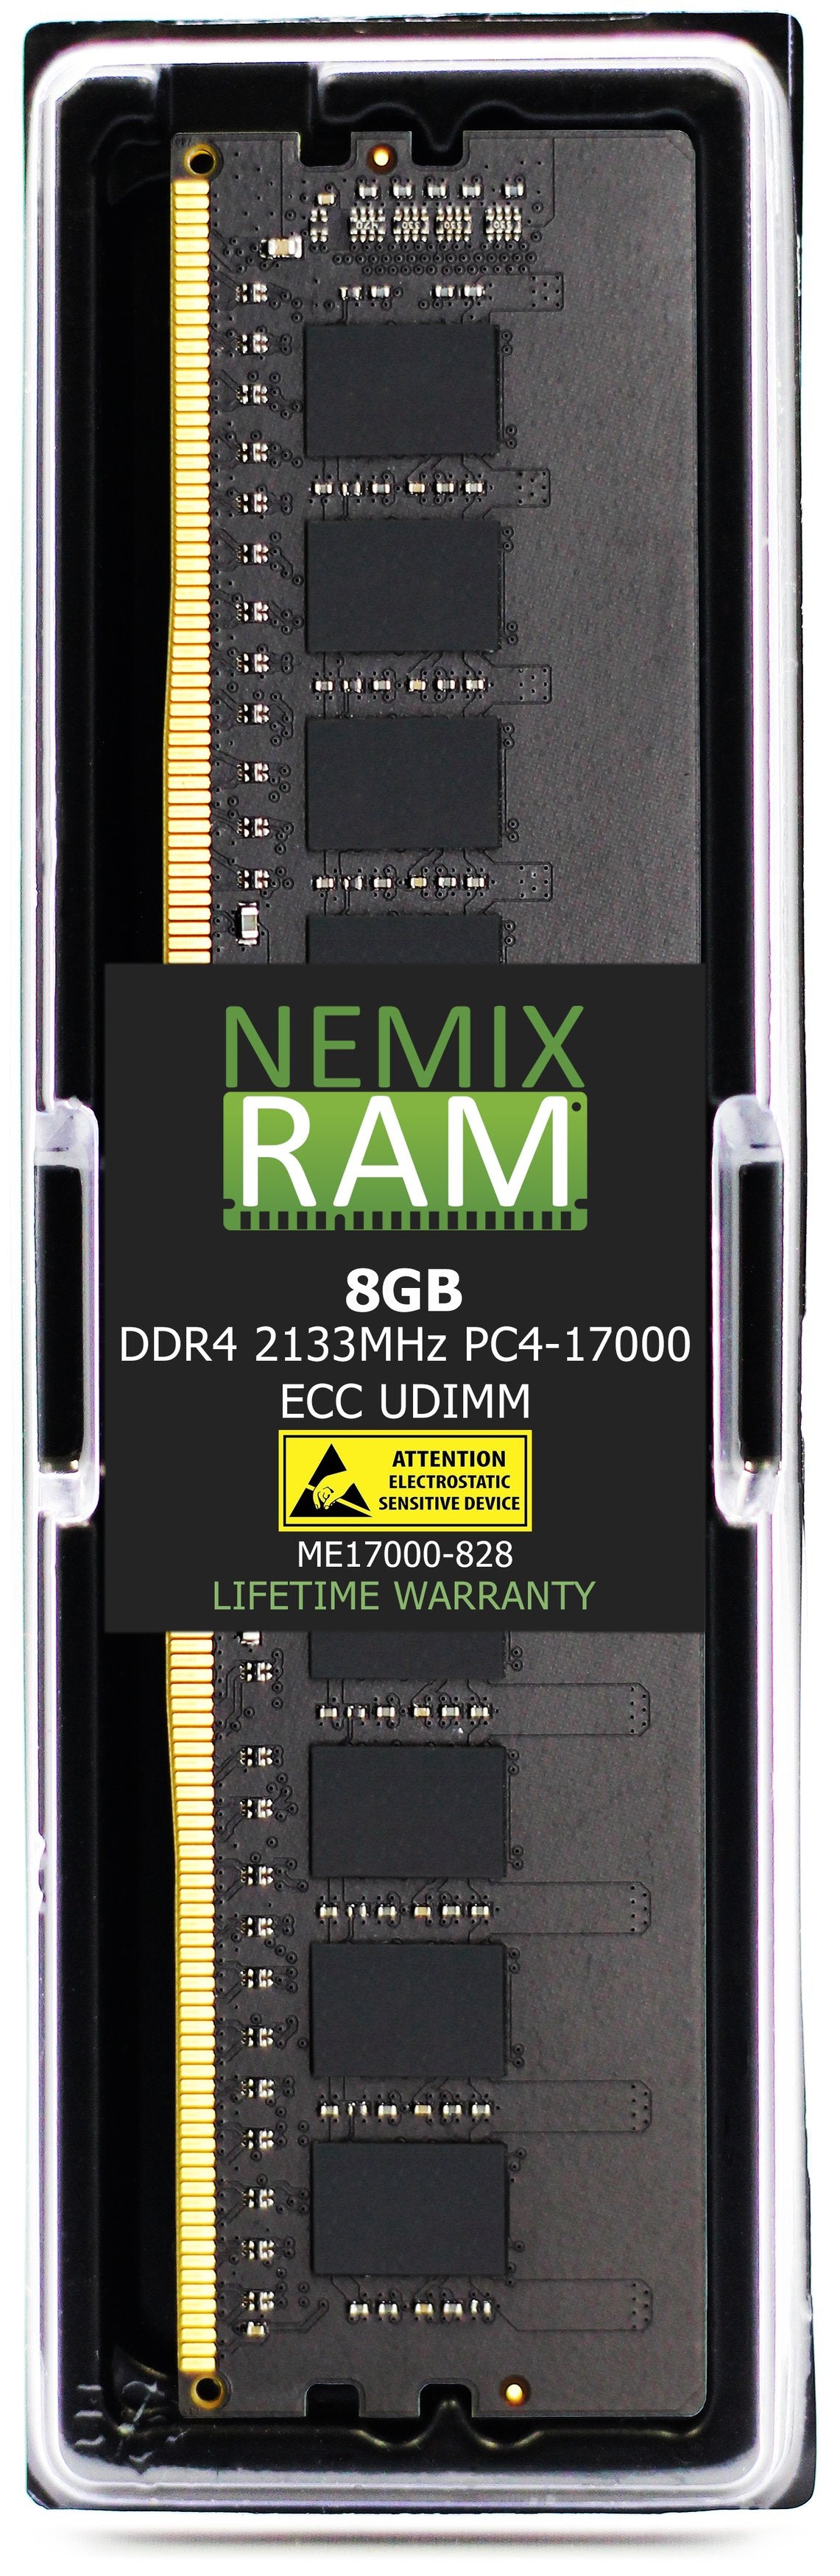 8GB DDR4 2133MHZ PC4-17000 ECC UDIMM Compatible with Supermicro MEM-DR480L-CL01-EU21